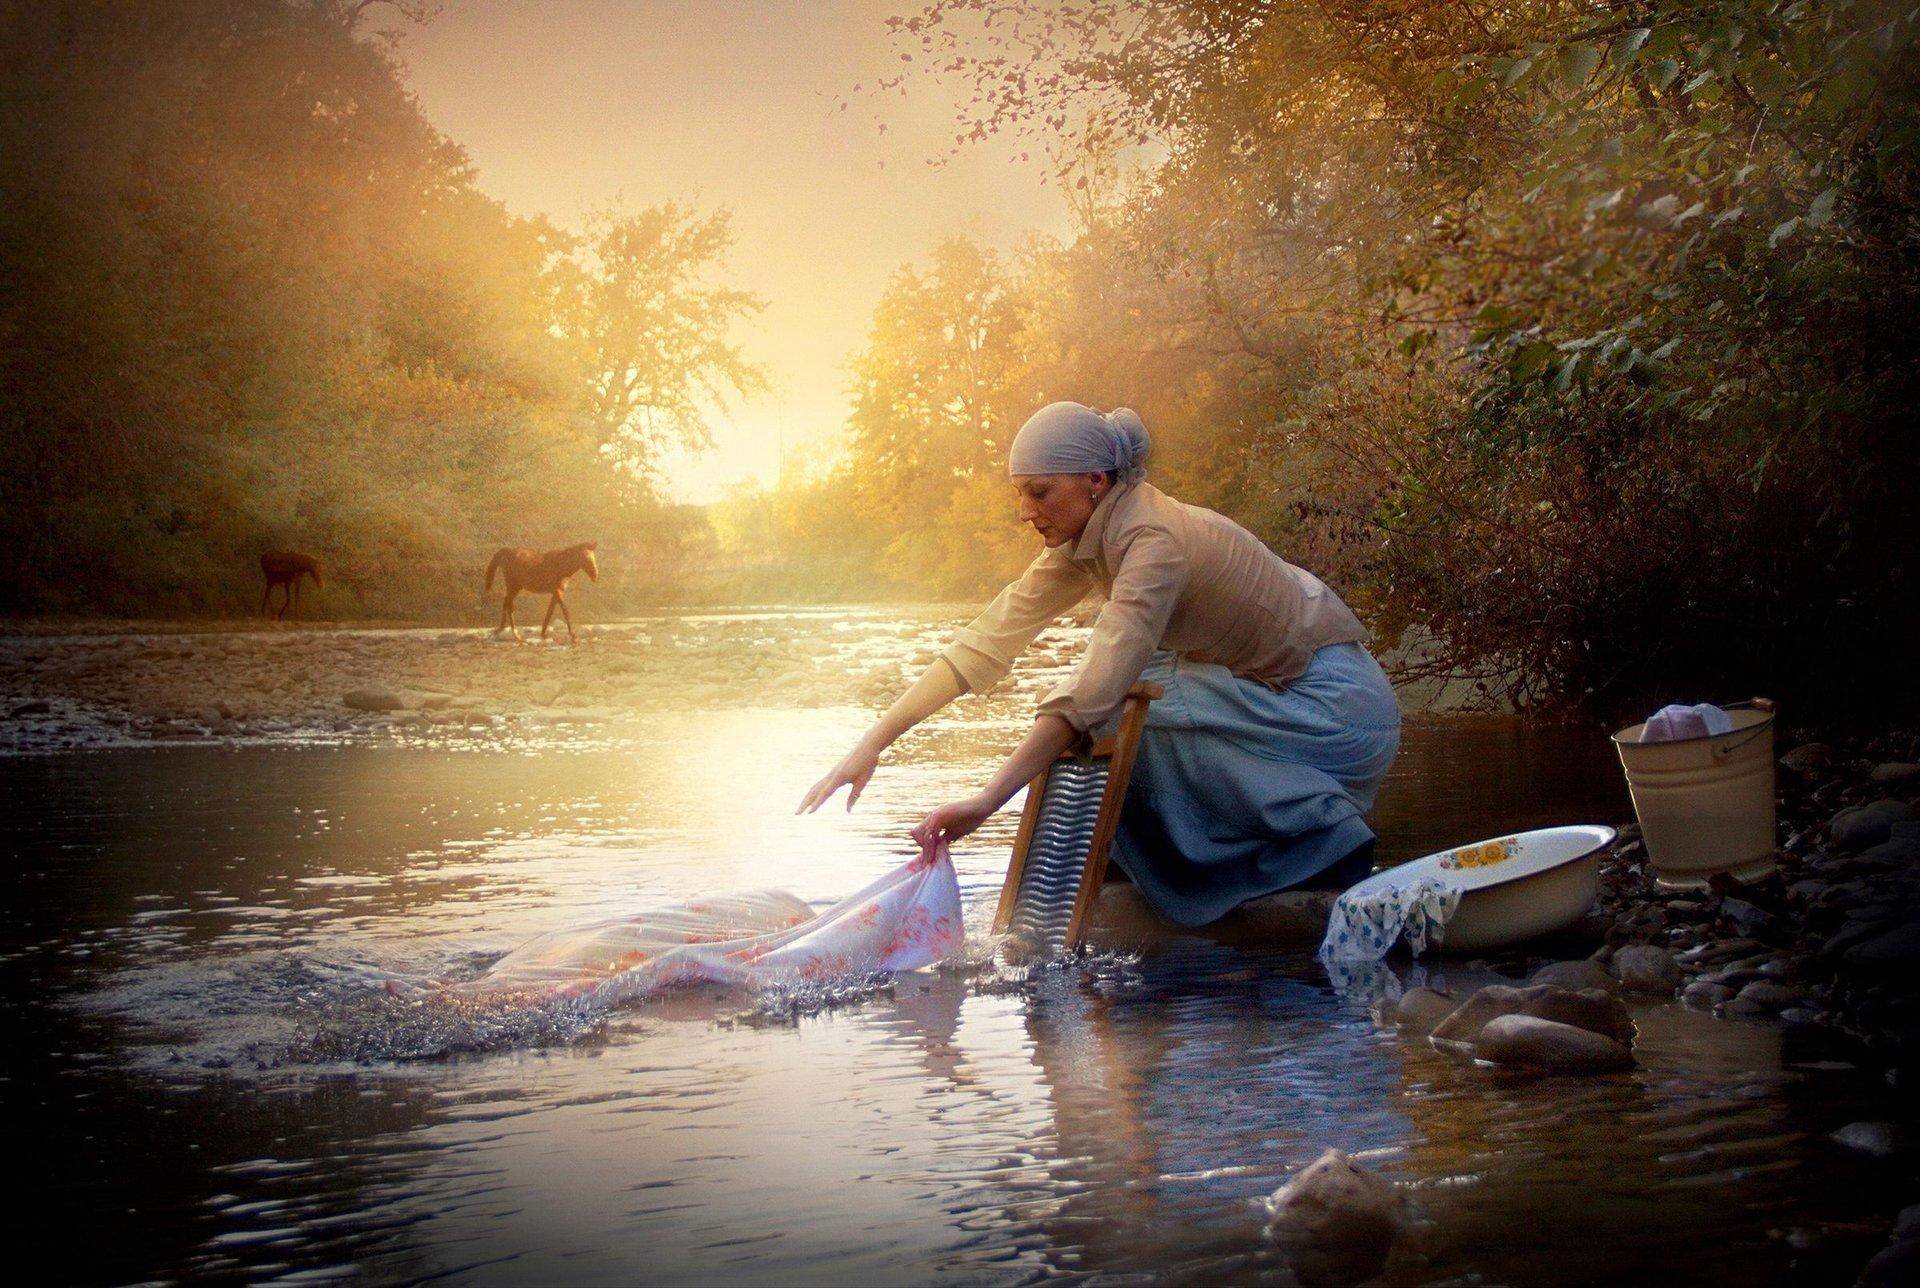 Стирают белье в реке. Стирка на реке. Женщина стирает белье в реке. Стирка на речке. Девушка стирает в реке.